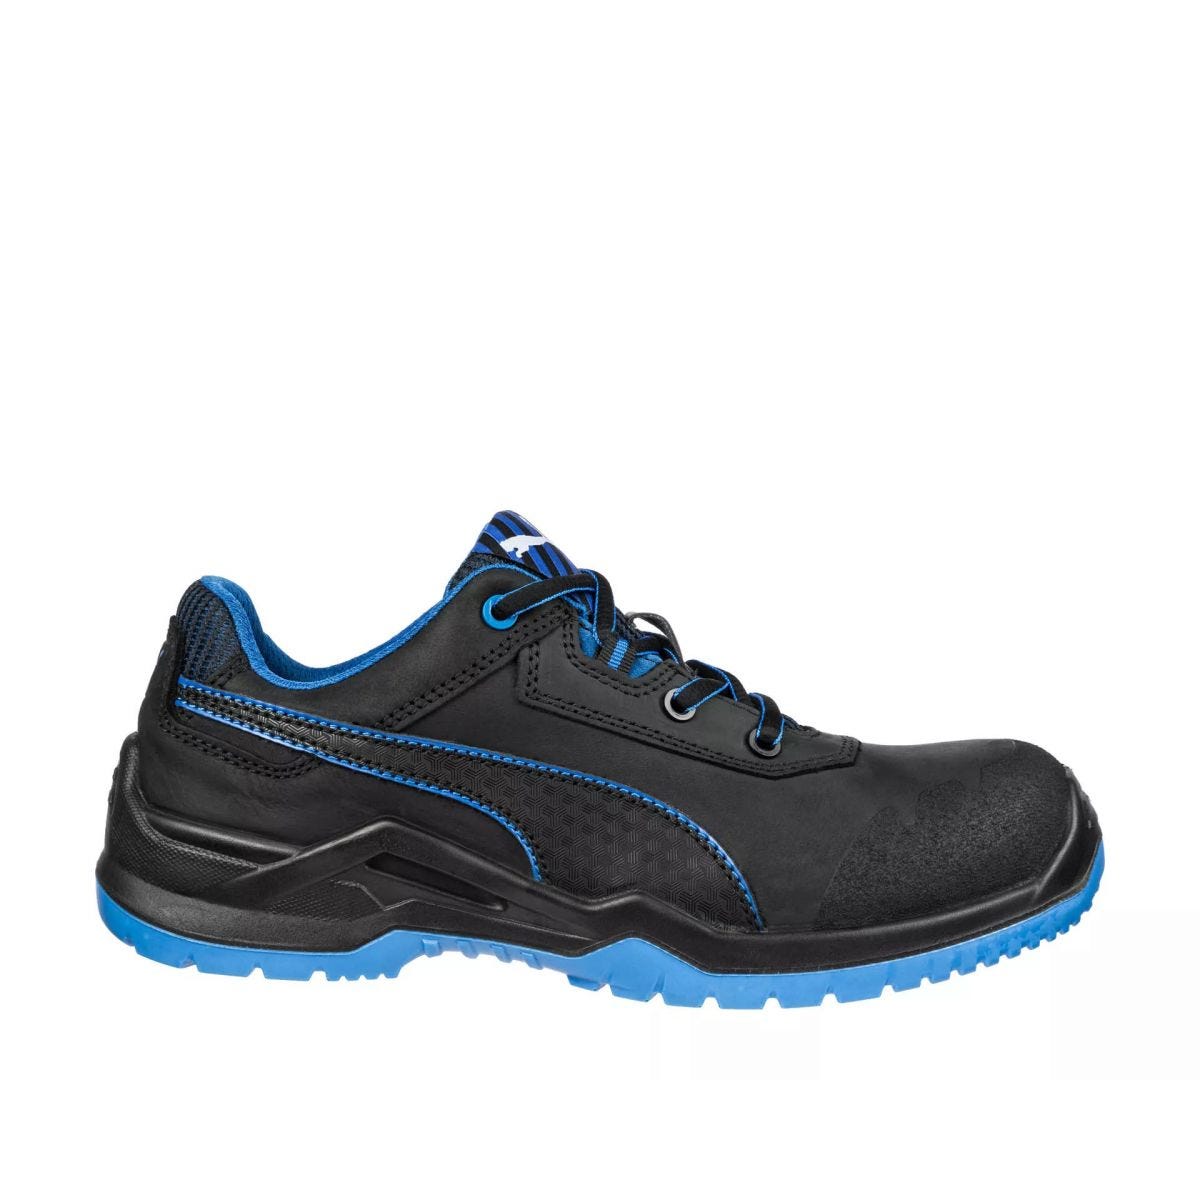 Chaussures de sécurité Argon RX low S3 ESD SRC bleu - Puma - Taille 40 0